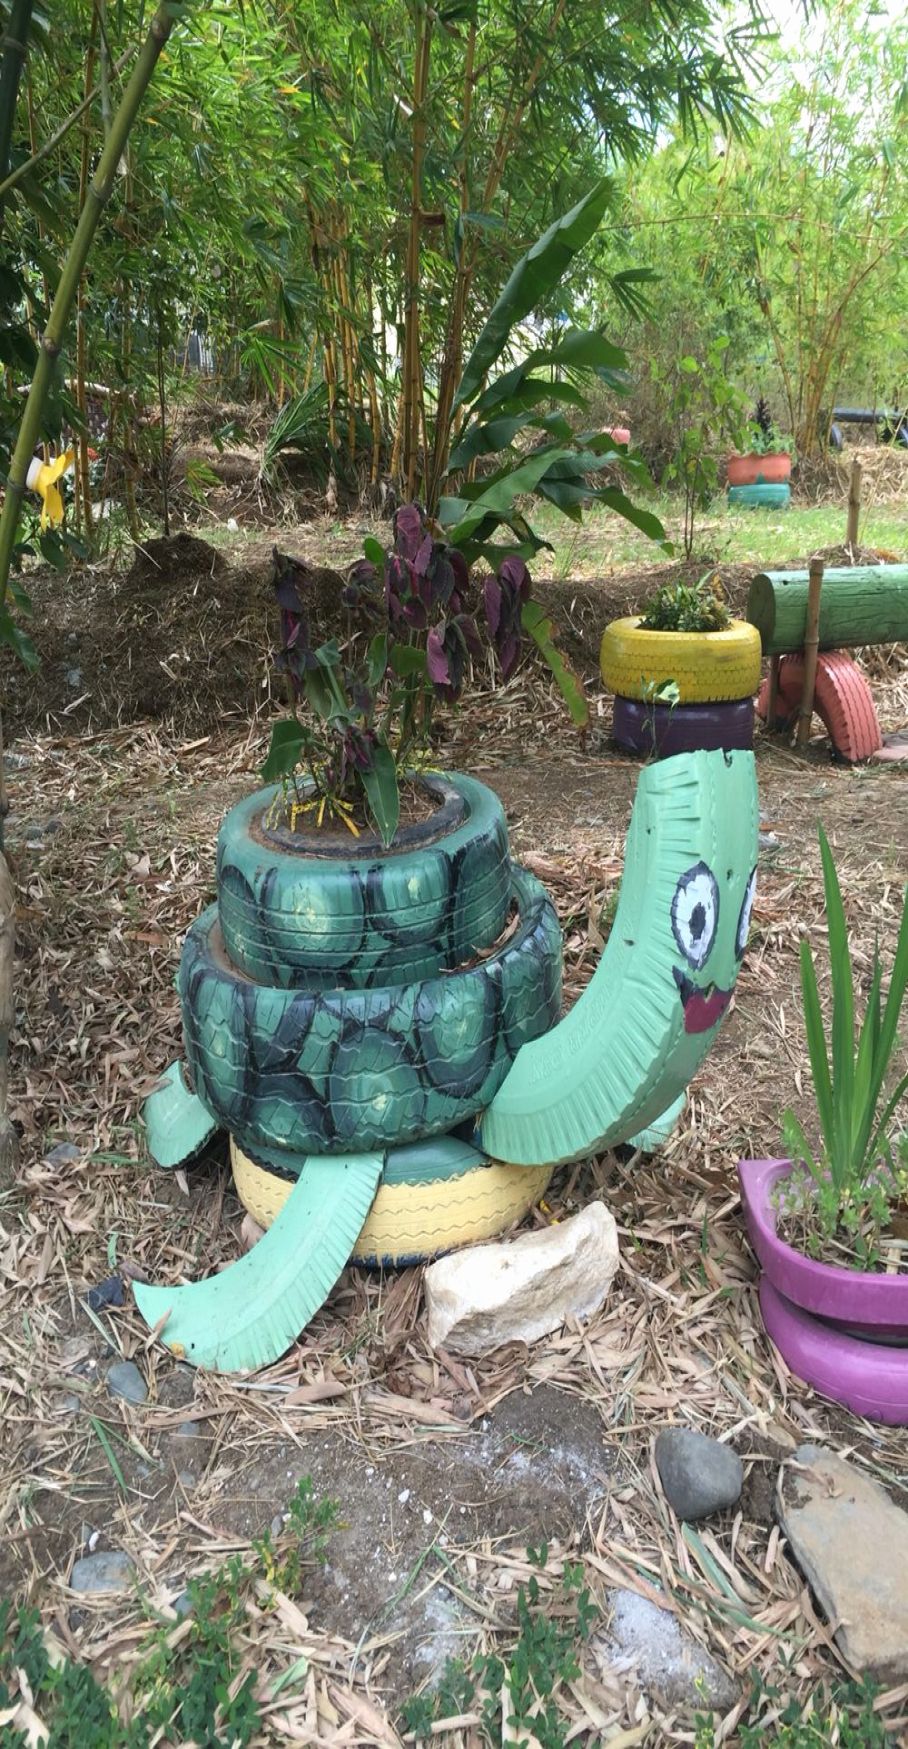 Fun Diy Recycled Garden Art Ideas